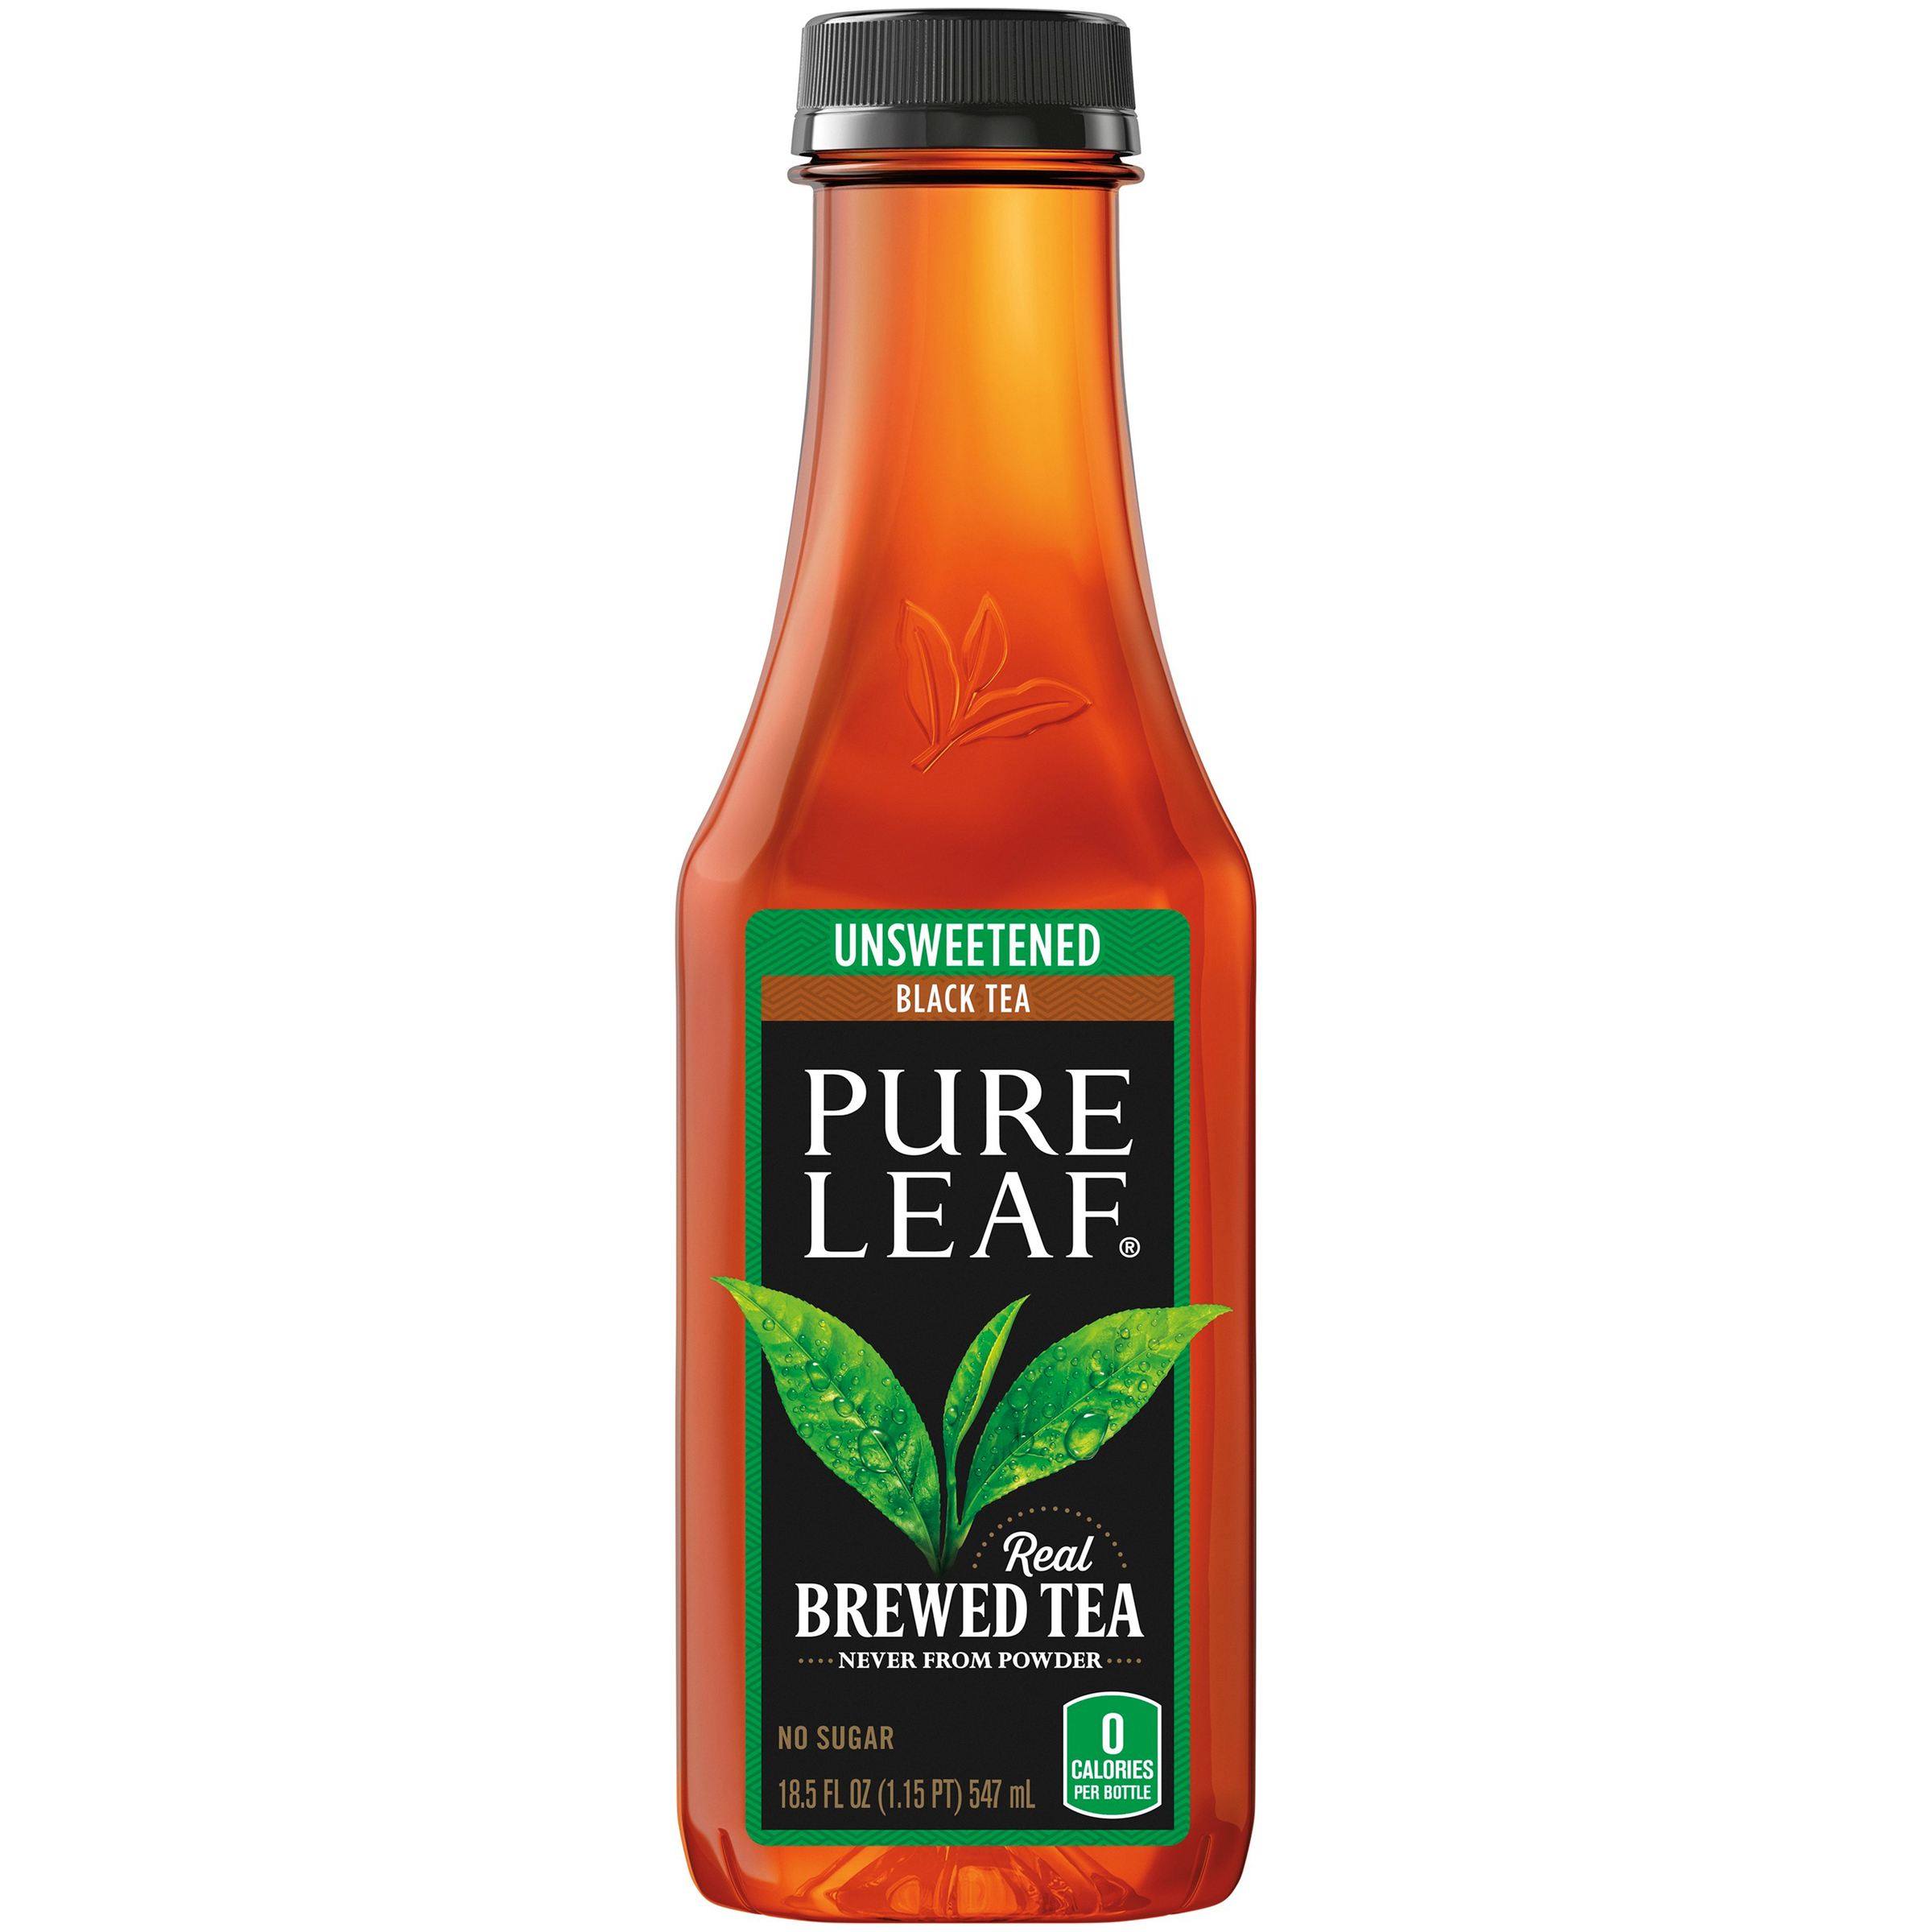 Pure Leaf Real Brewed Tea Unsweetened Black Tea Food Product Image